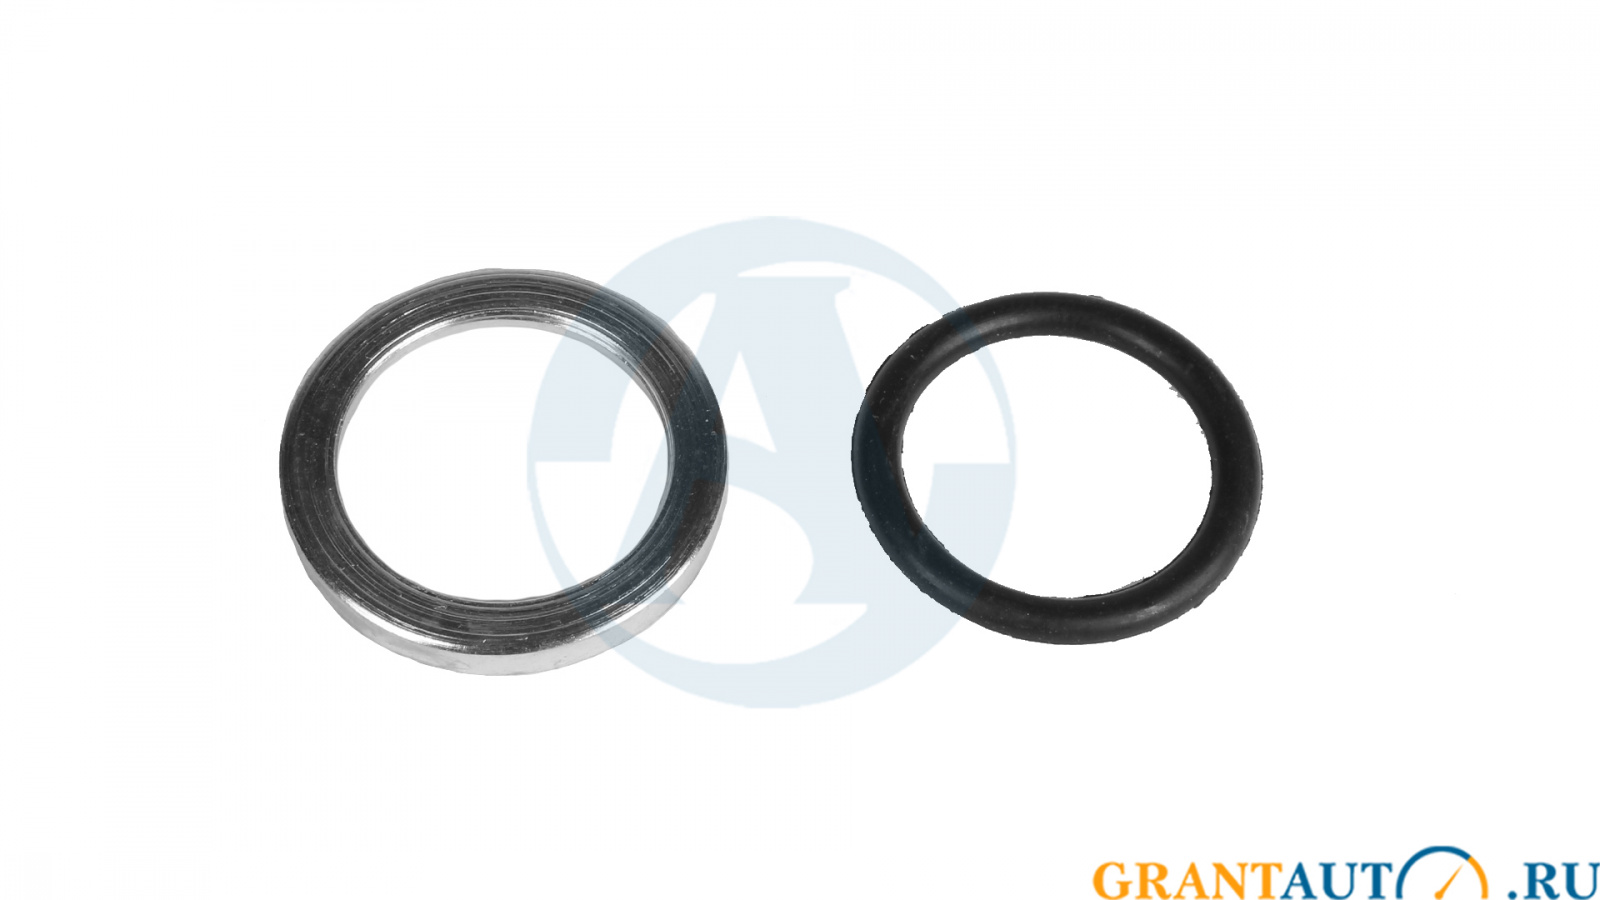 Кольцо упорное с кольцом уплотнительным под М16 STARTEC фотография №1